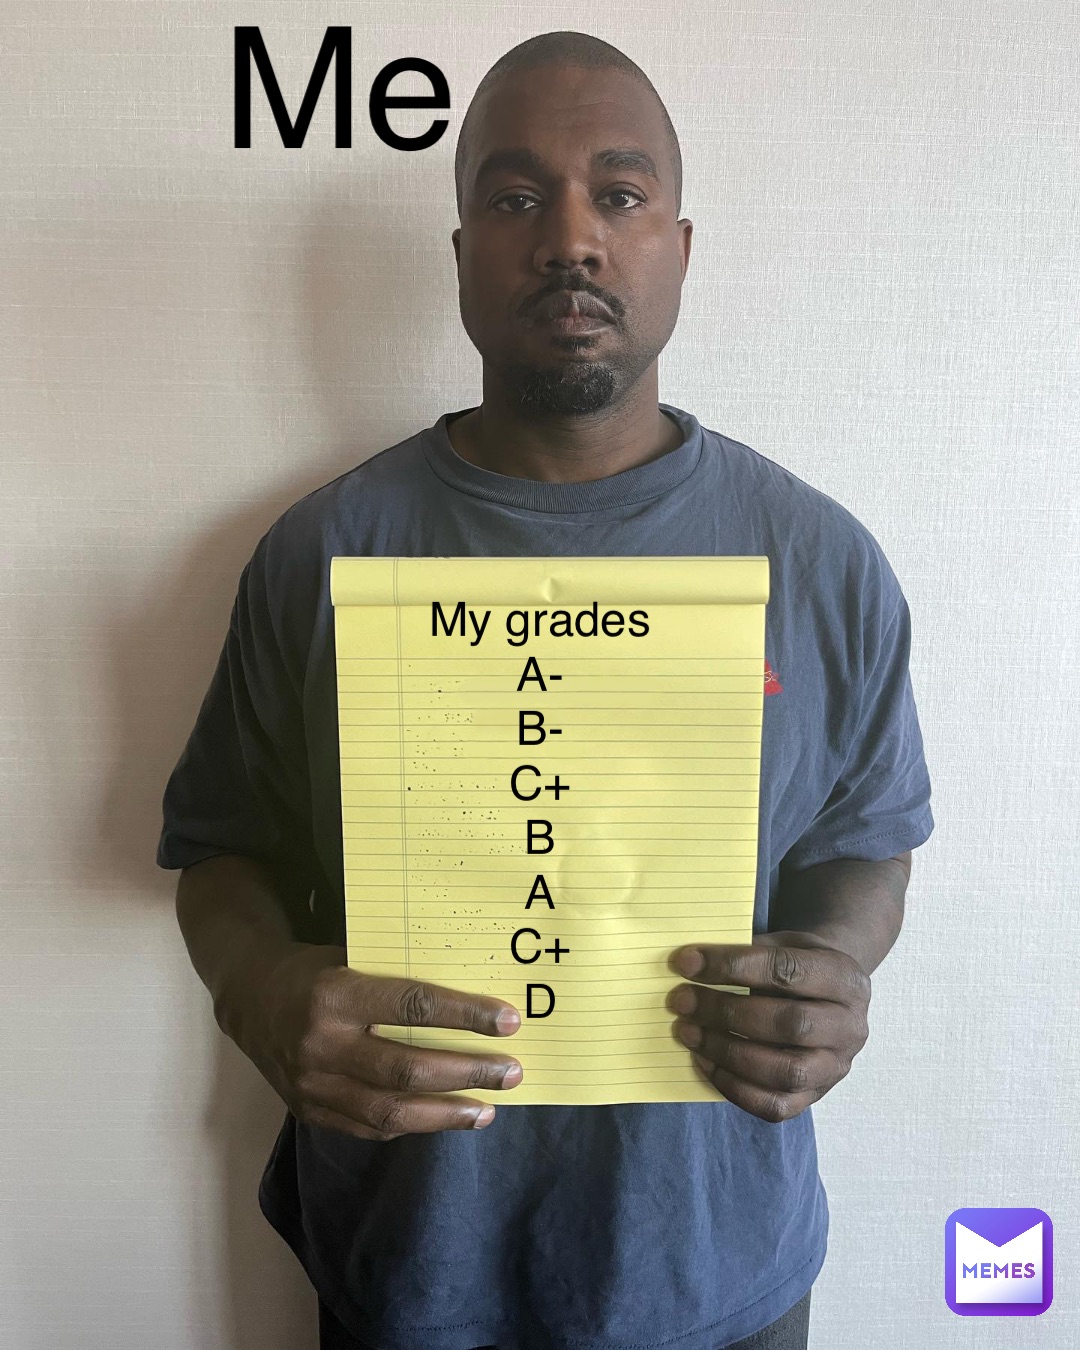 My grades
A-
B-
C+
B
A
C+
D Me